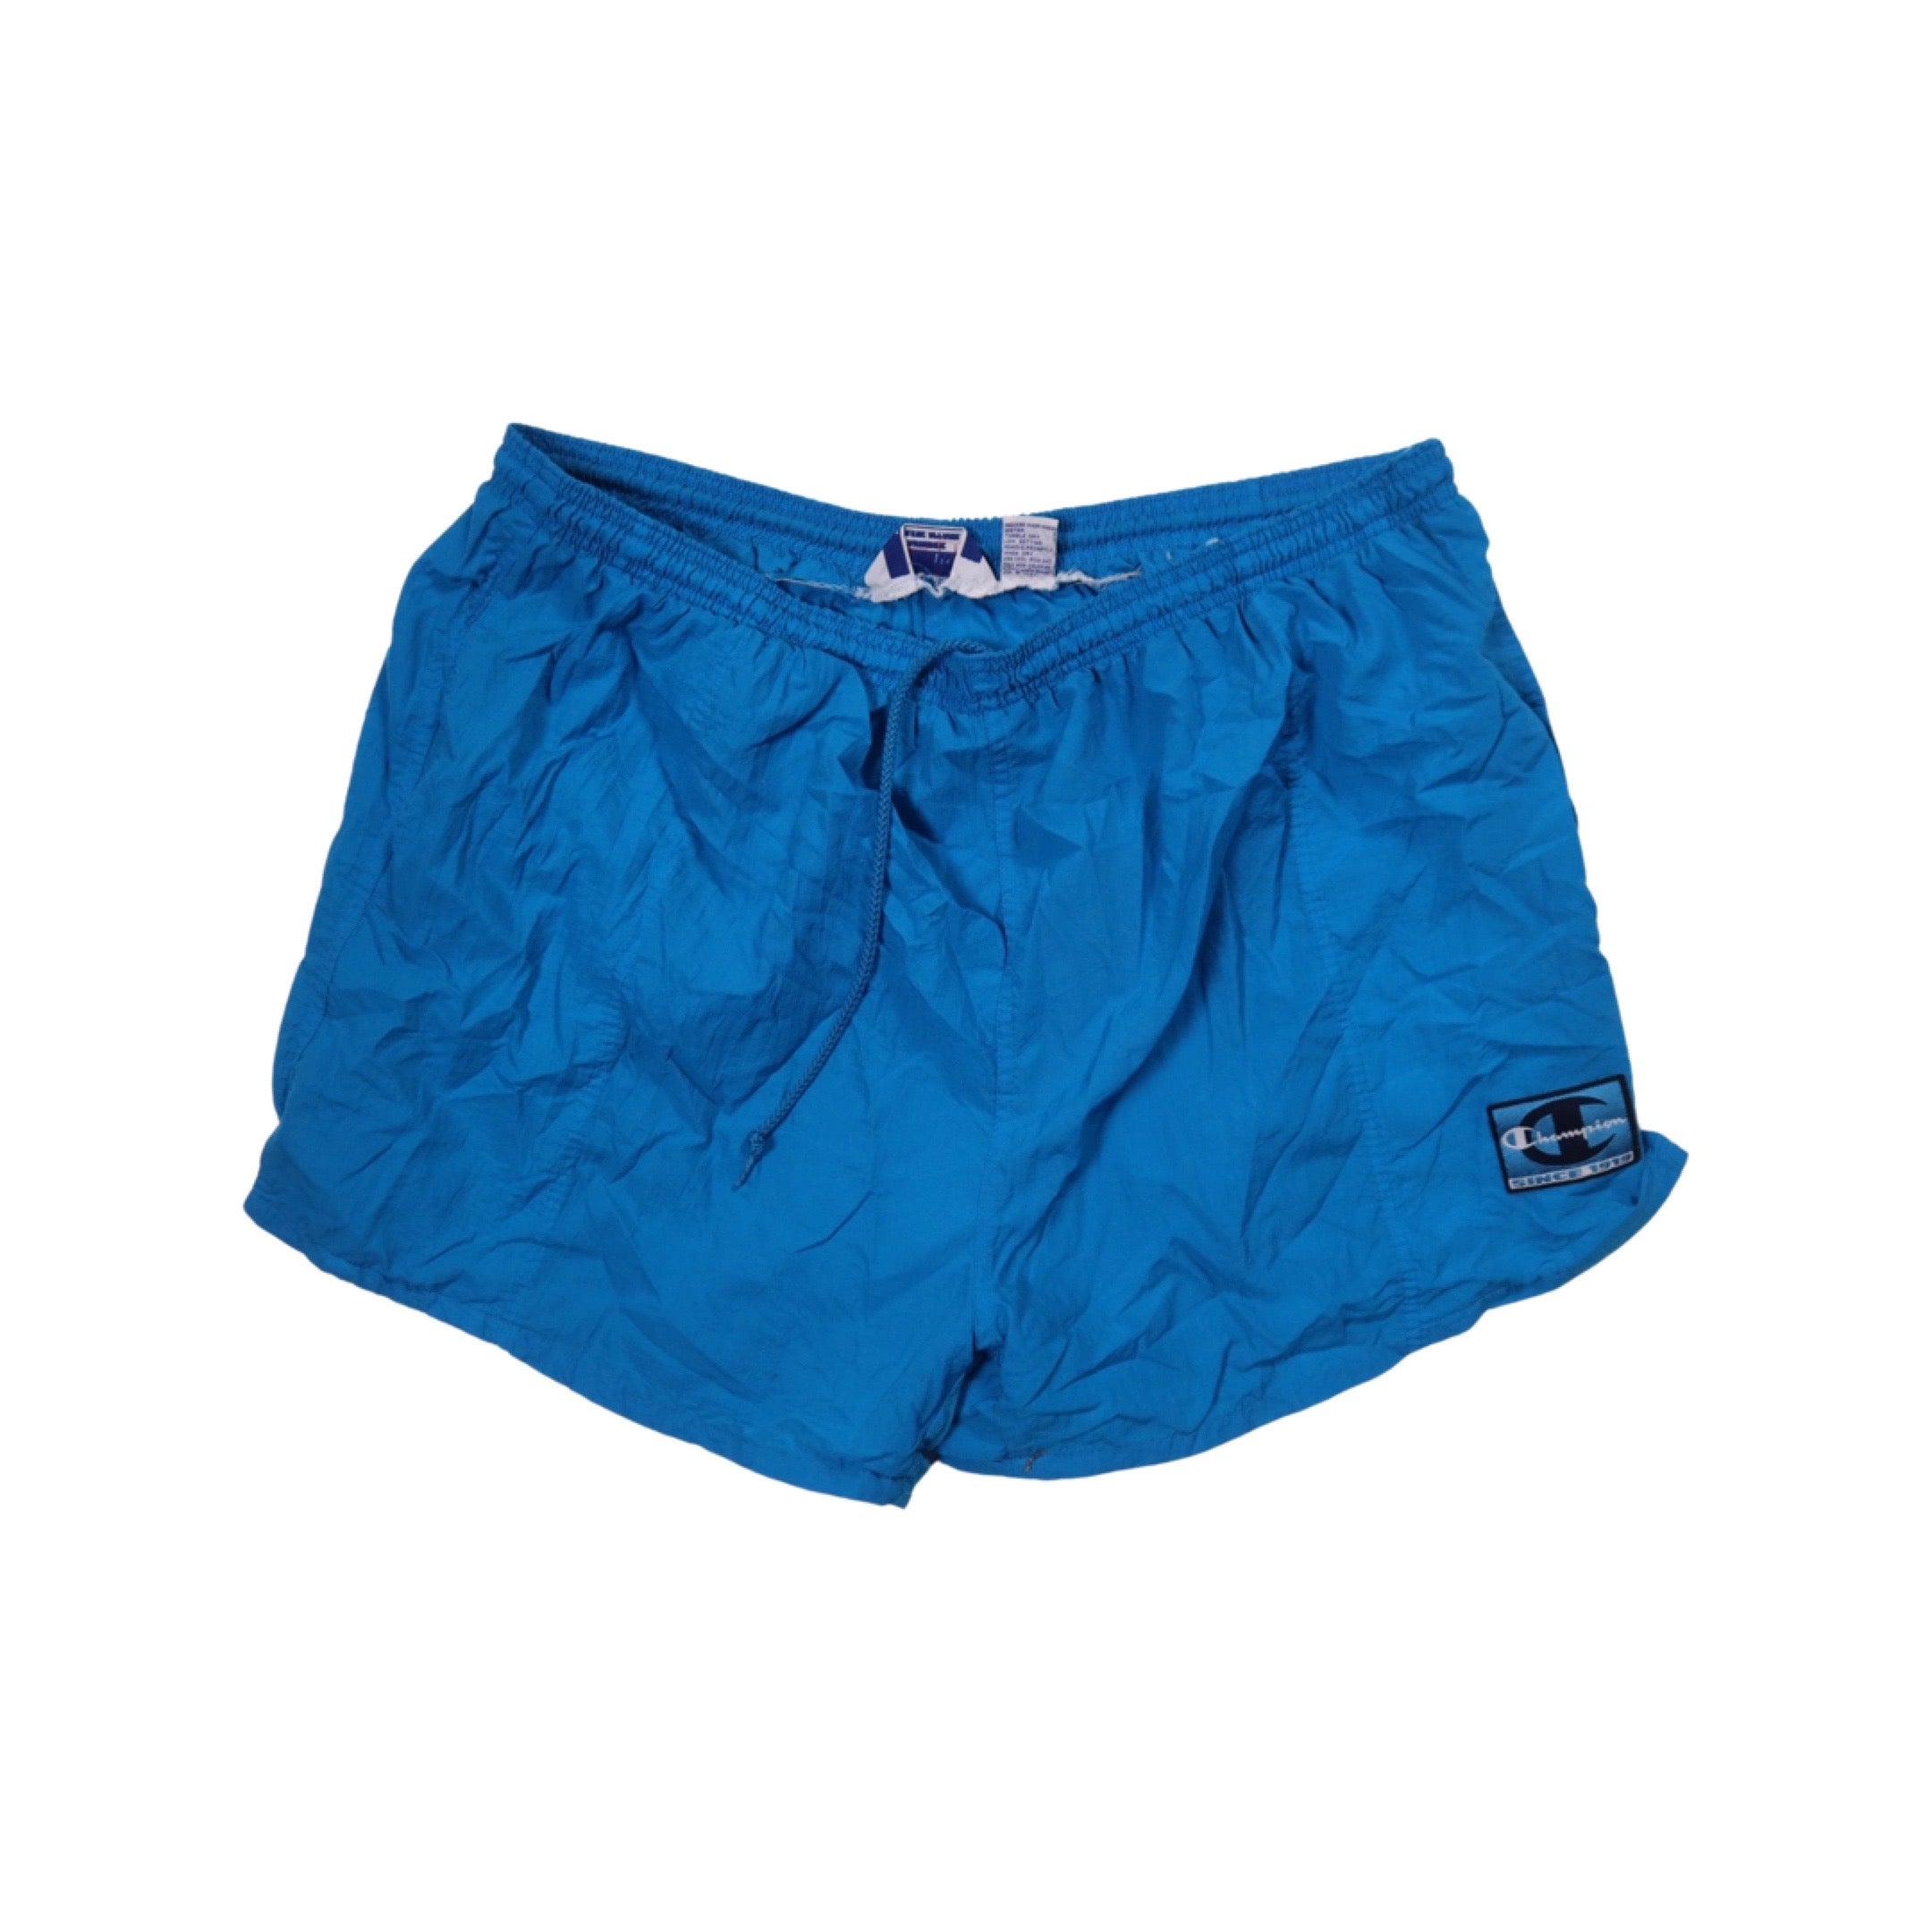 Blue Champion 90s Shorts (Large)